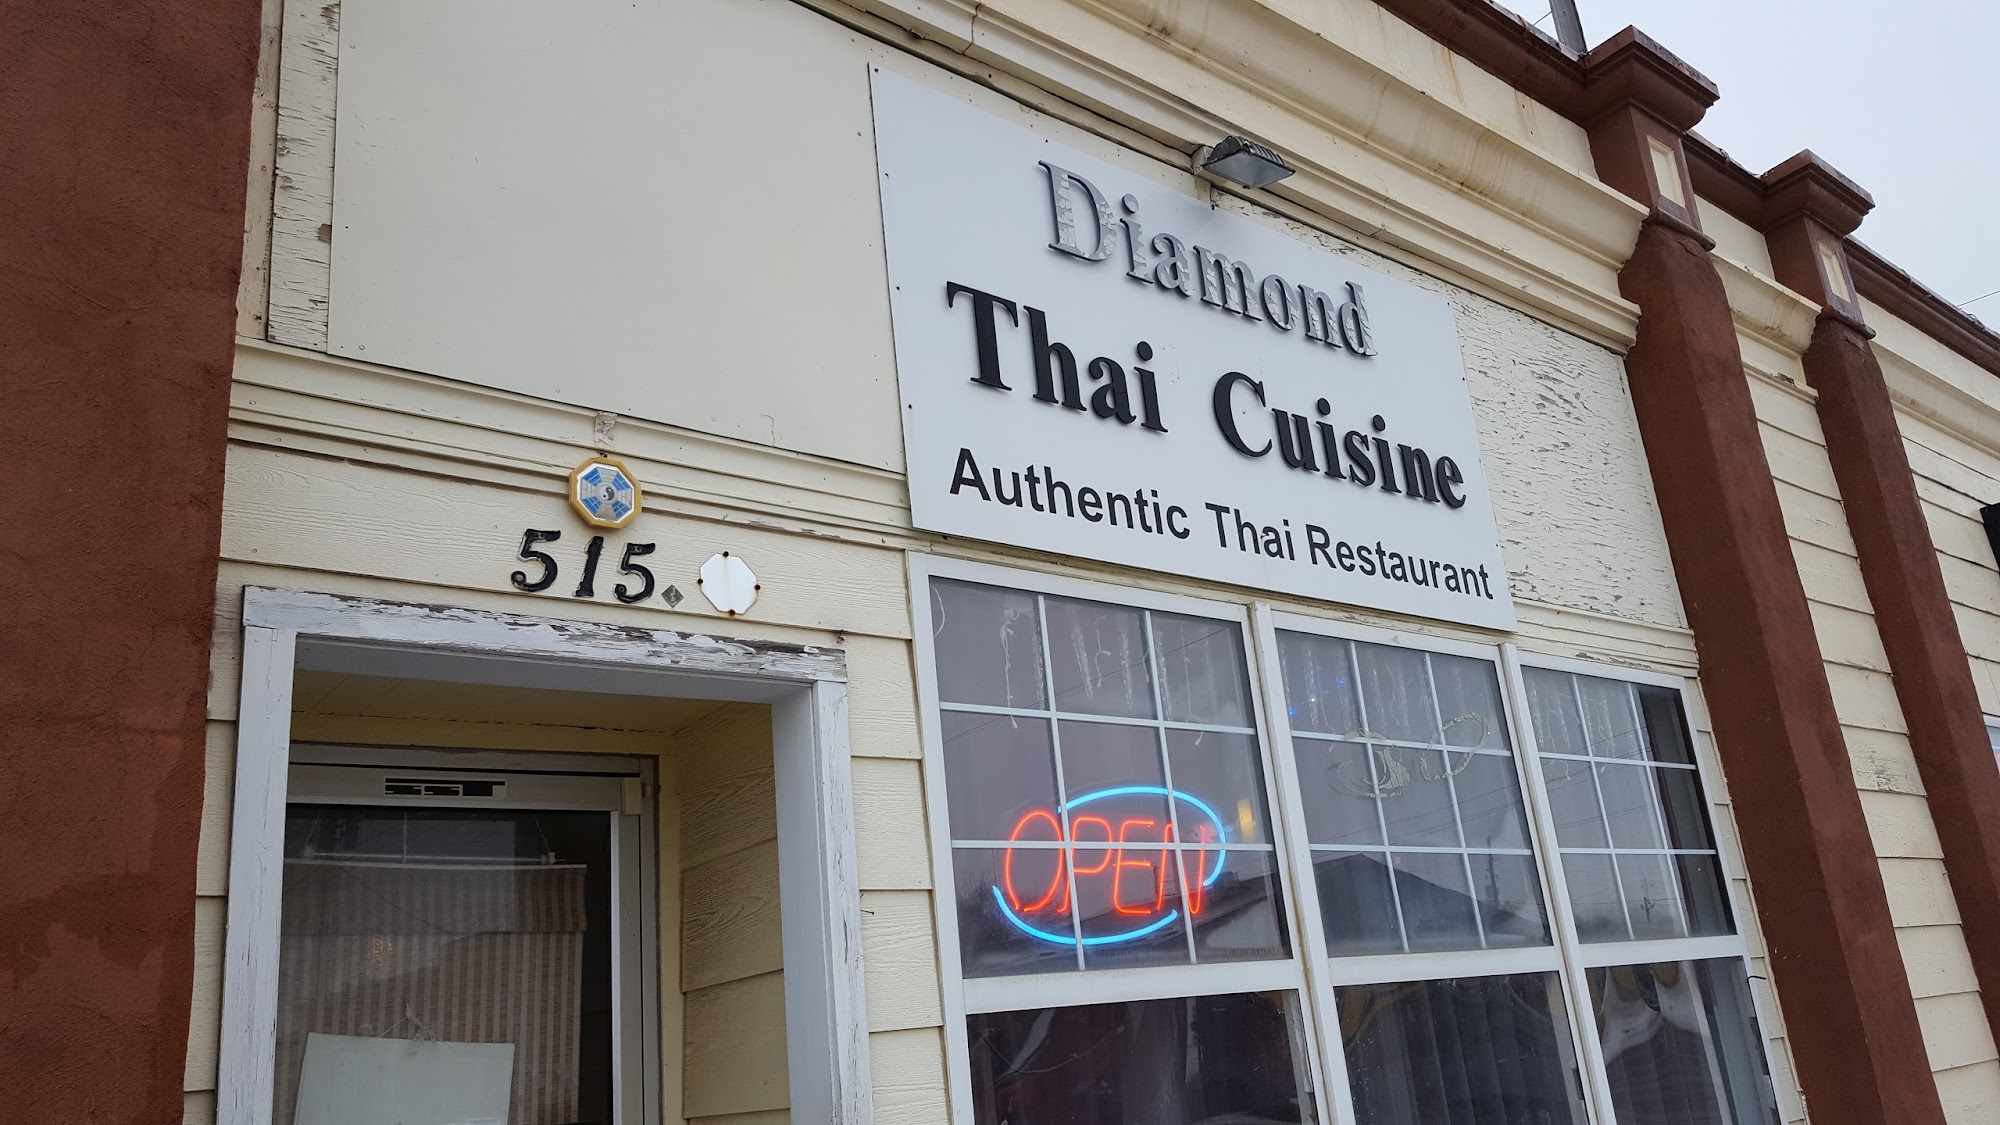 Diamond Thai Cuisine 515 W 7th St, Sioux City, IA 51103